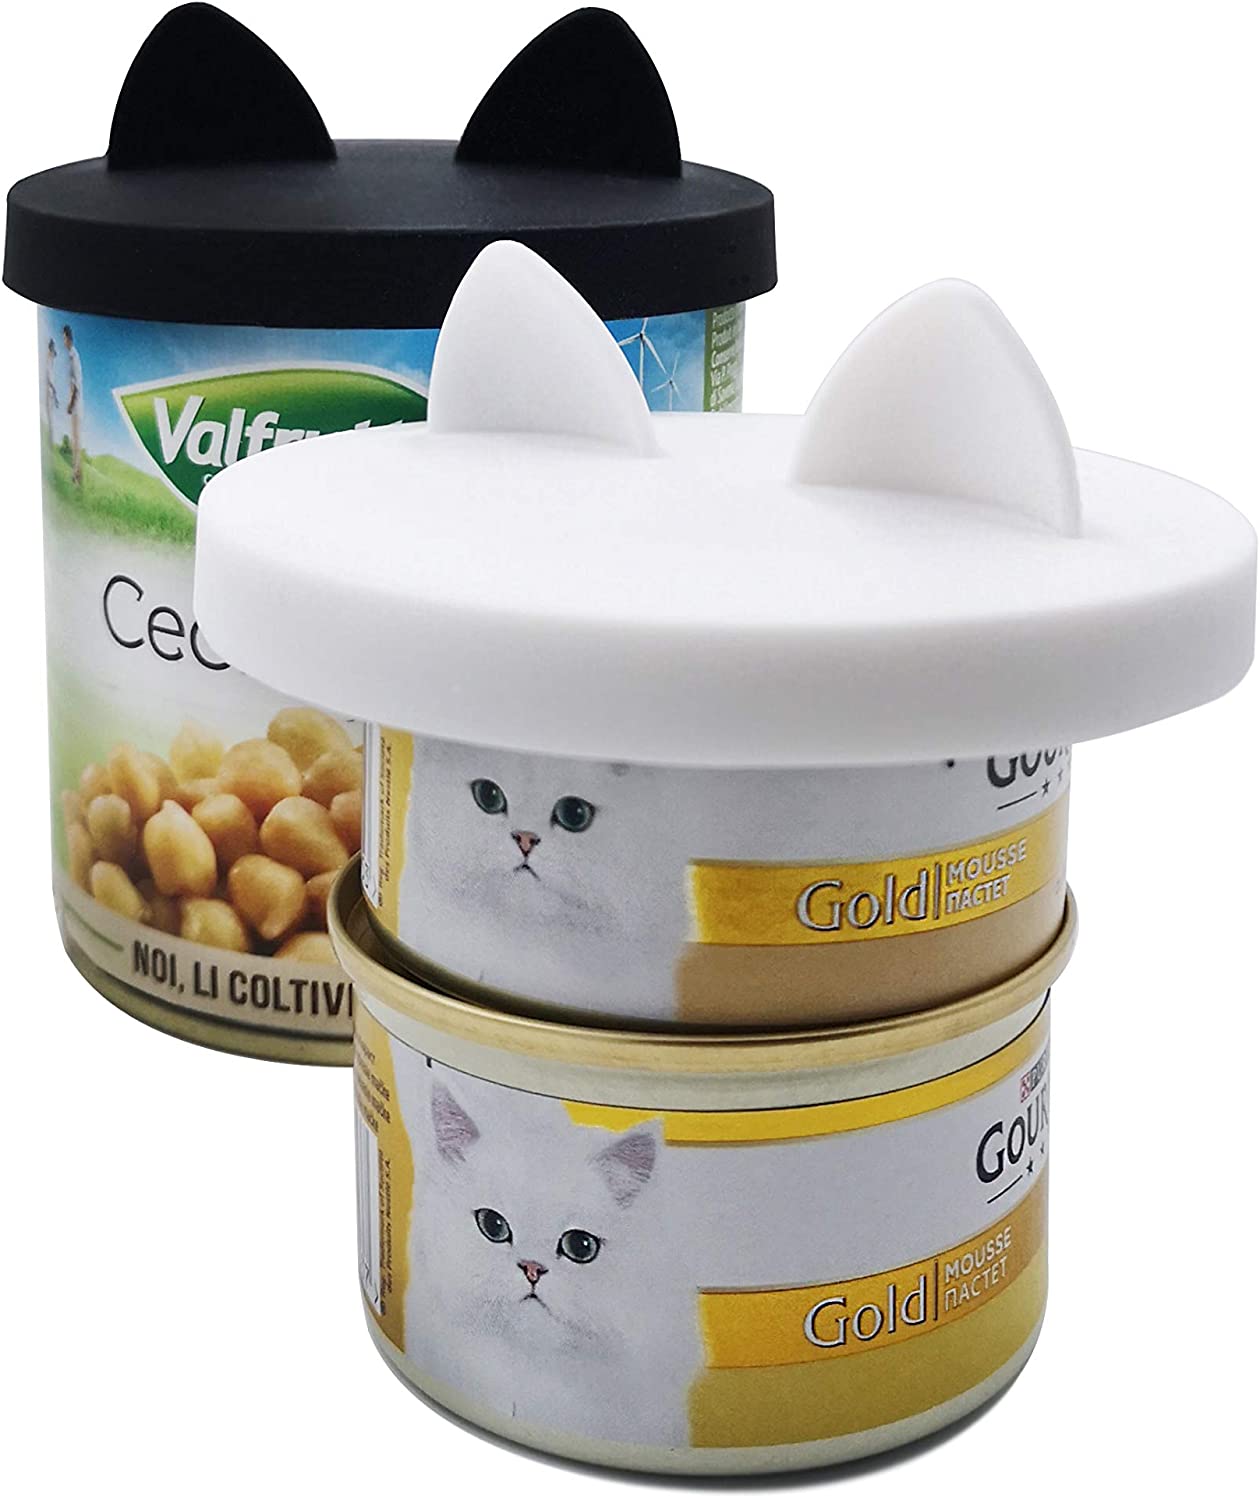  GuMan 2 Paquetes de Tapas para latas de Comida para Mascotas con diseño de Oreja, Silicona Universal para Gatos y Perros, 1 para 3 tamaños estándar 